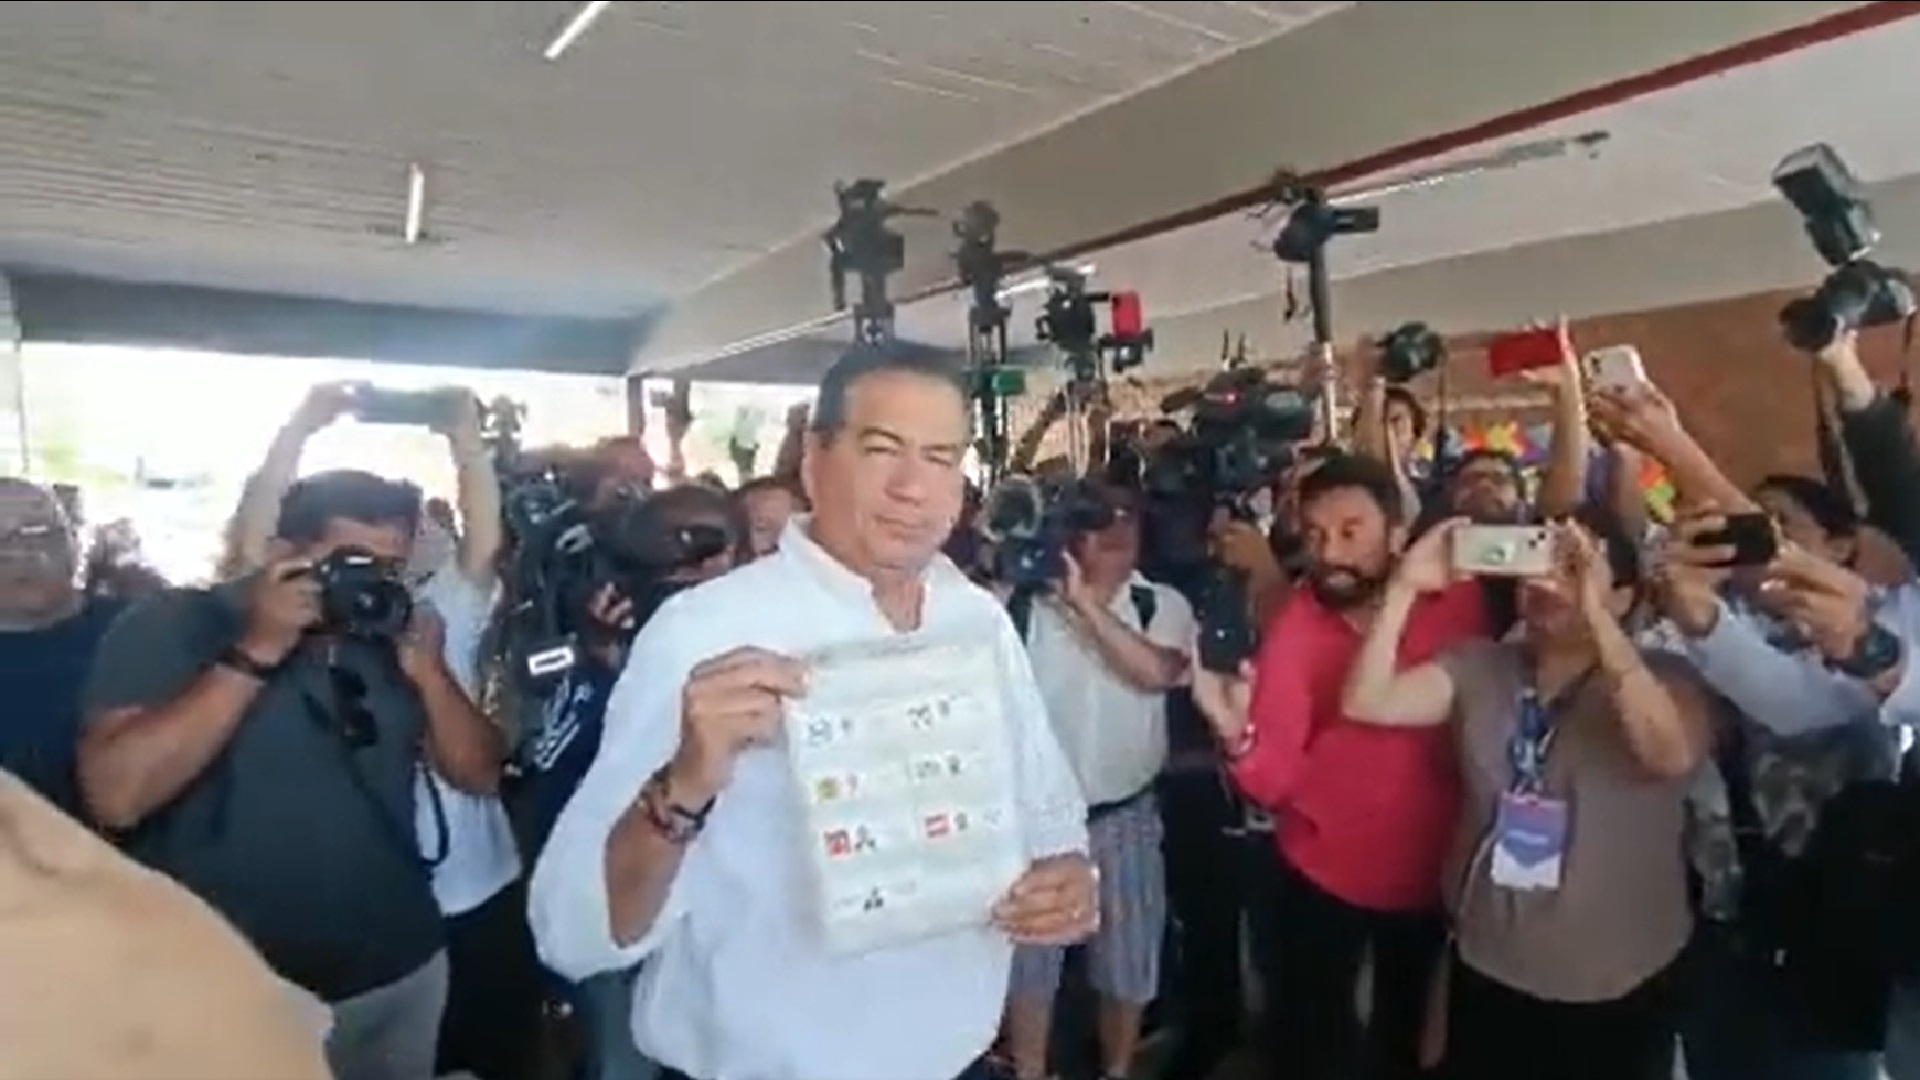 Mejía Berdeja emitió su voto en Torreón: “Soy candidato ciudadano; mi partido es Coahuila”